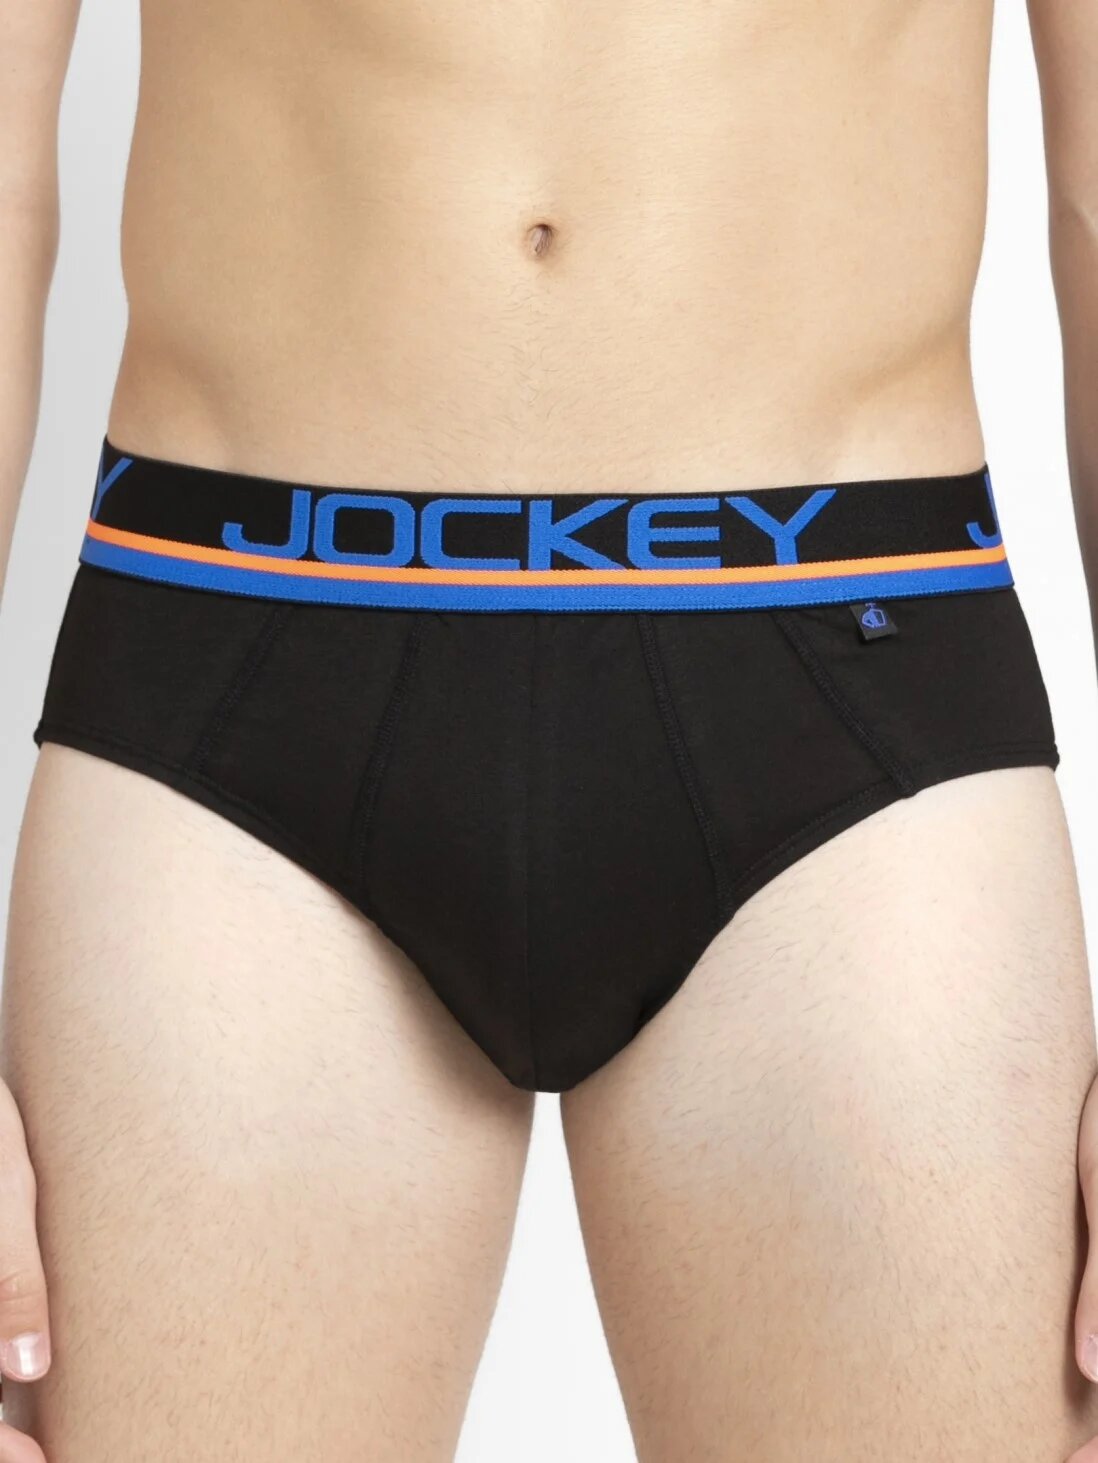 JOCKEY MEN'S INNERWEAR Tagged Jockey Underwear - FineBrandz